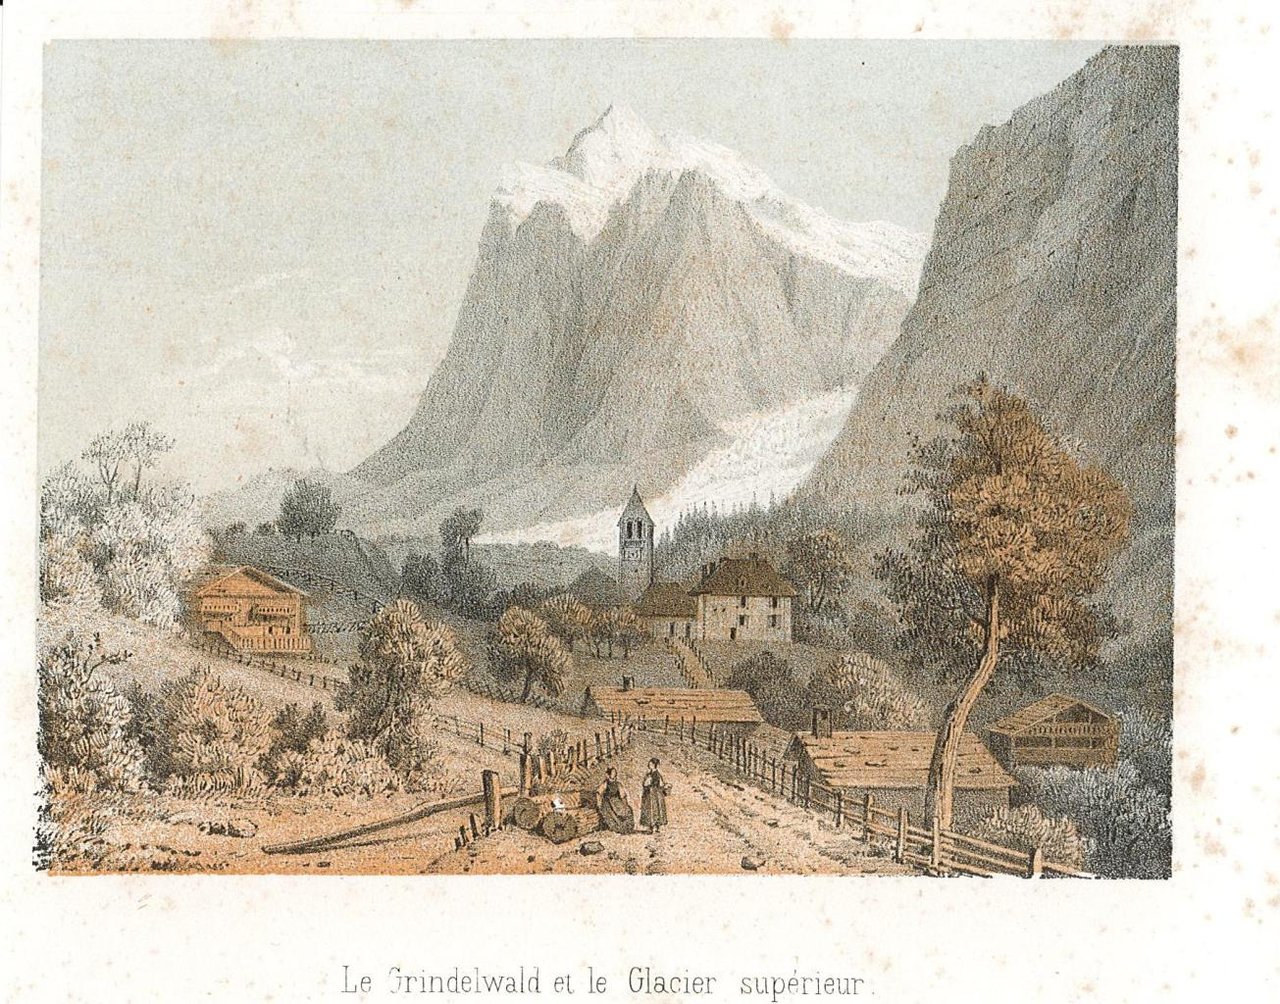 Le Grindelwald et le Glacier superieur